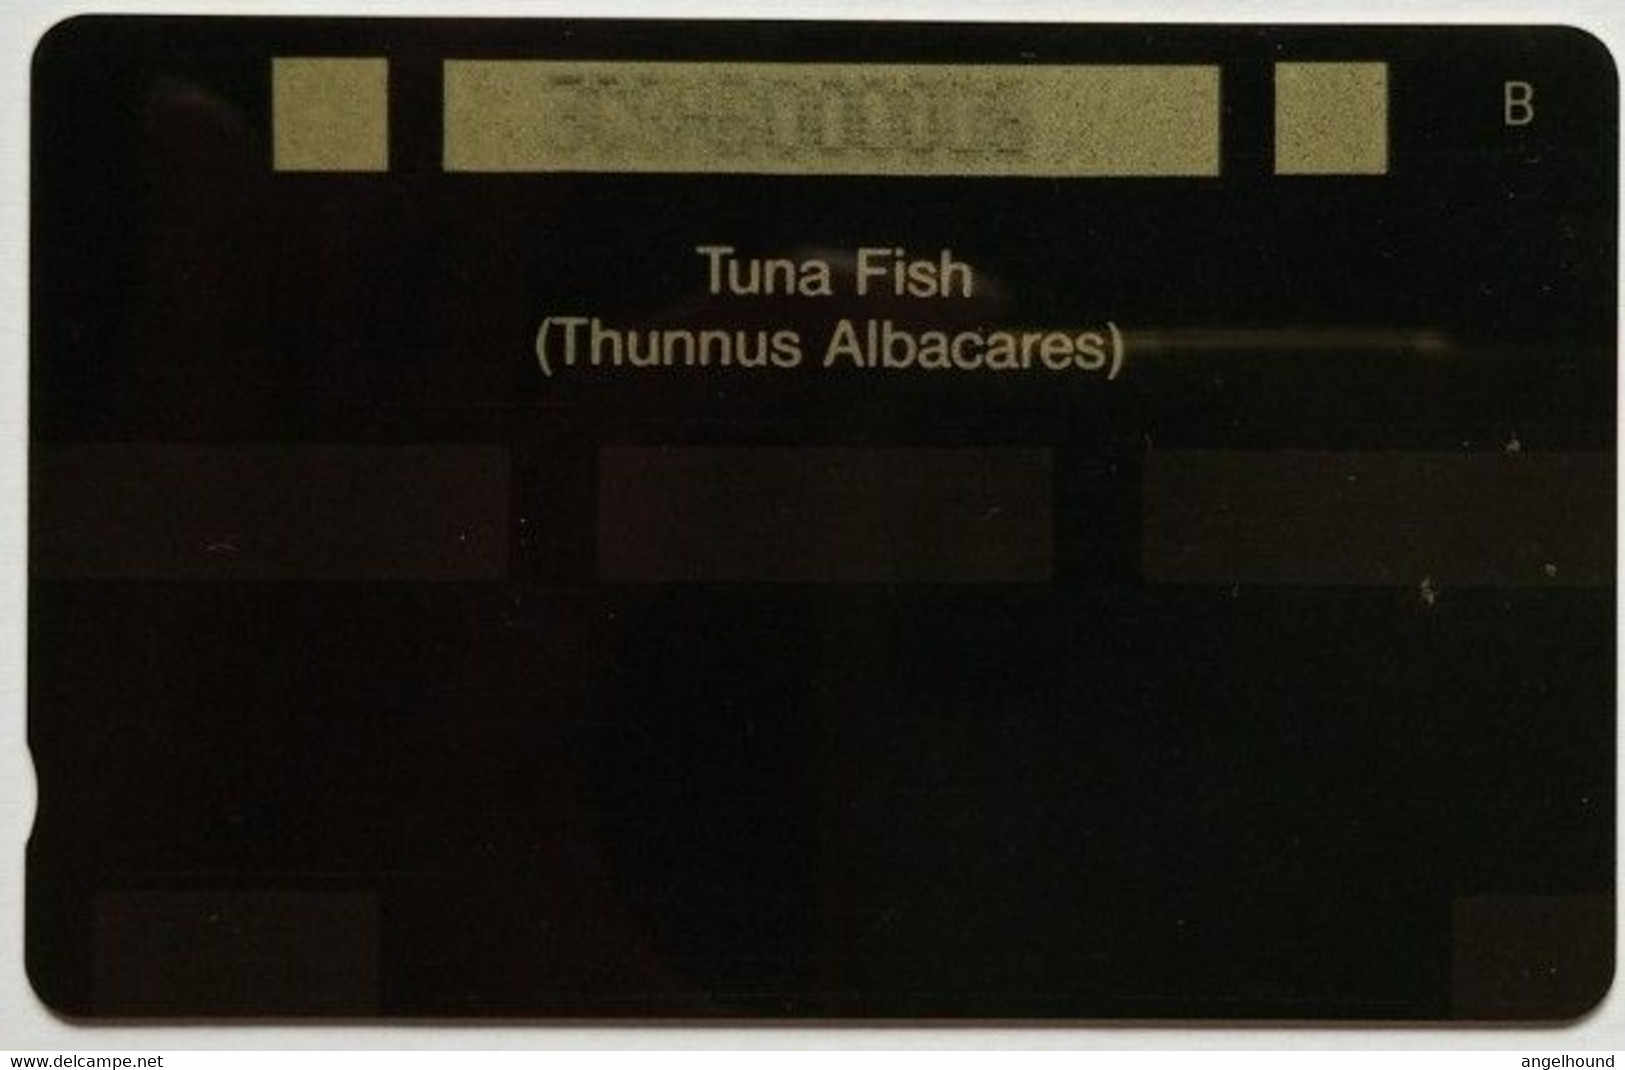 St. Helena Cable And Wireless £5 3CSHB " Tuna Fish ( New CW Logo )" - Isola Sant'Elena